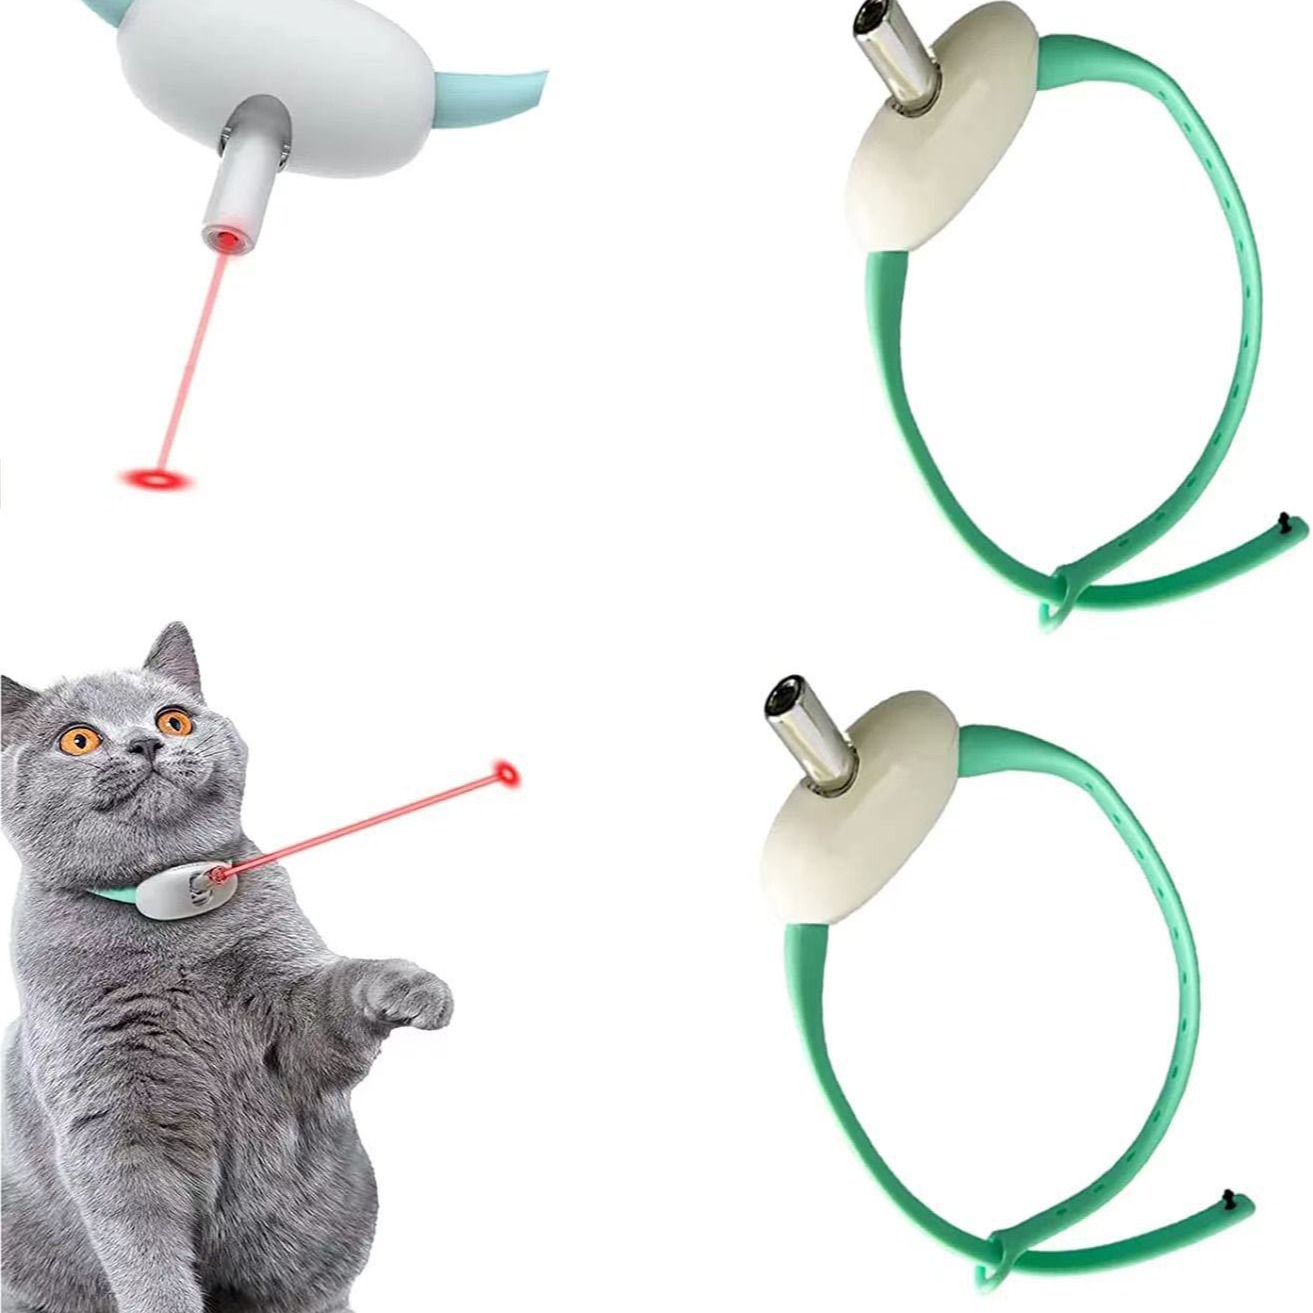 厂家直销宠物用品新品充电逗猫激光智能猫玩具激光项圈自动逗猫棒详情图4